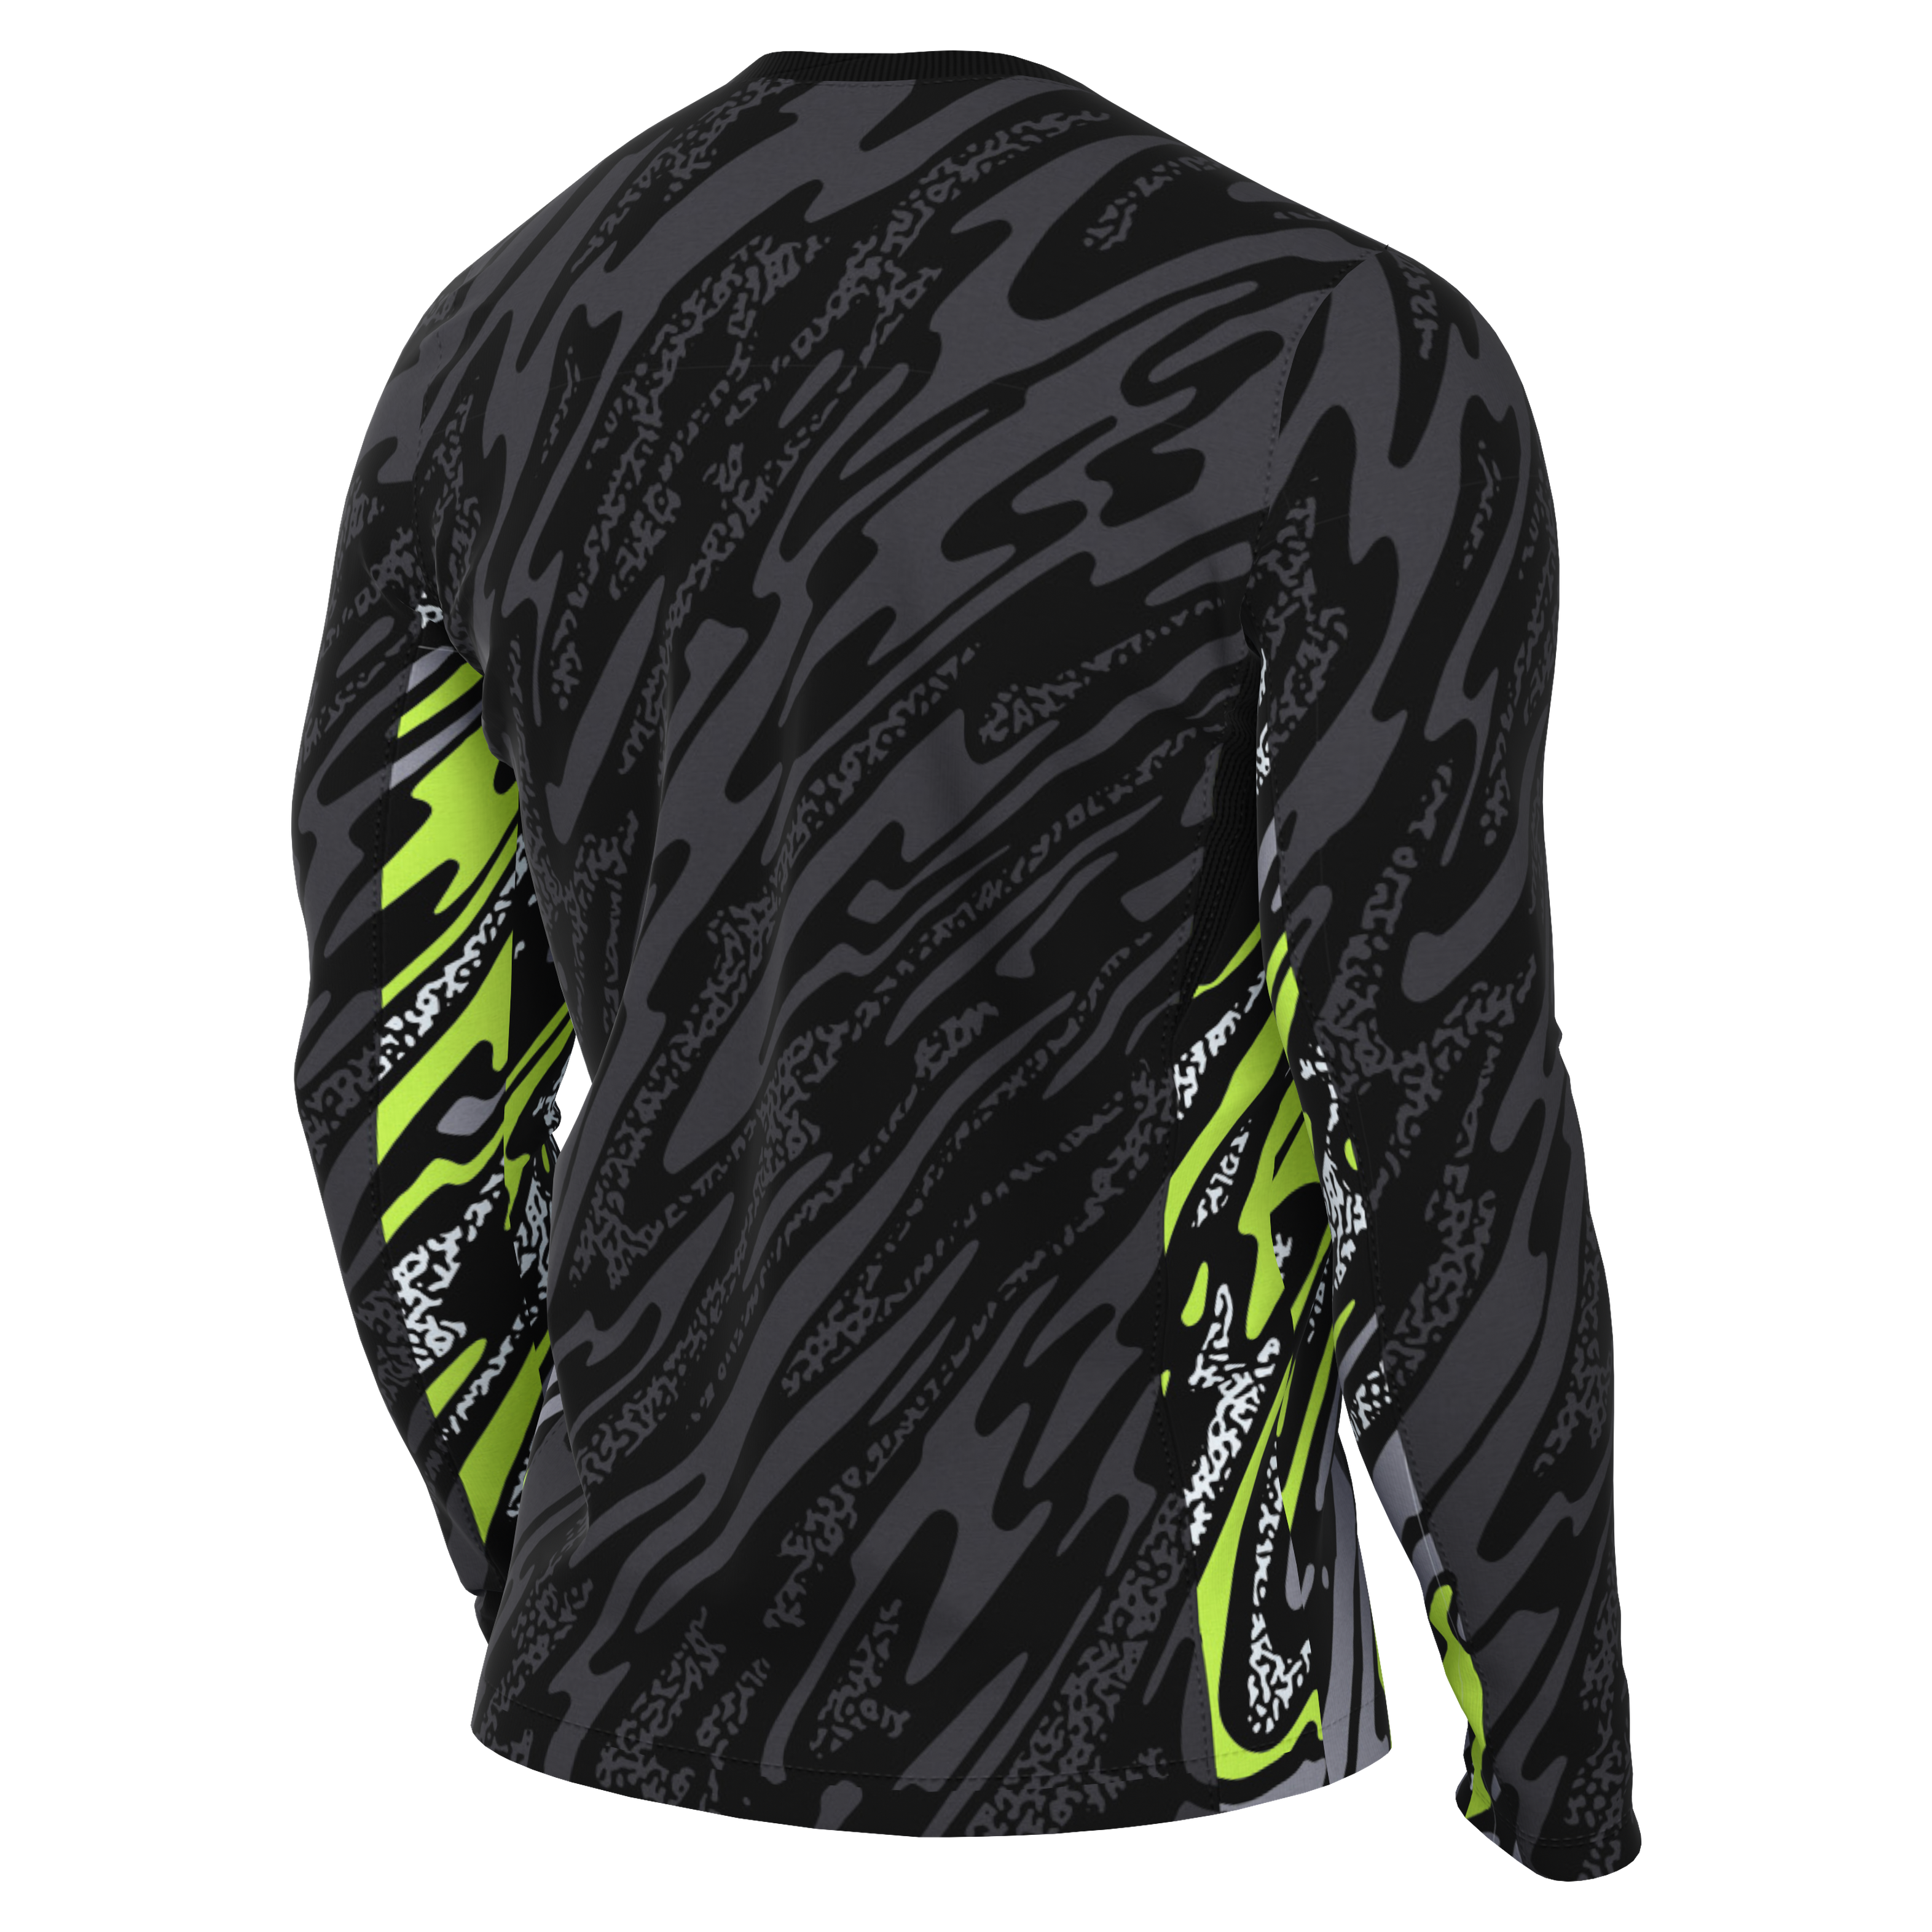 Nike Dri-FIT Gardien V GK Jersey (Long Sleeve)